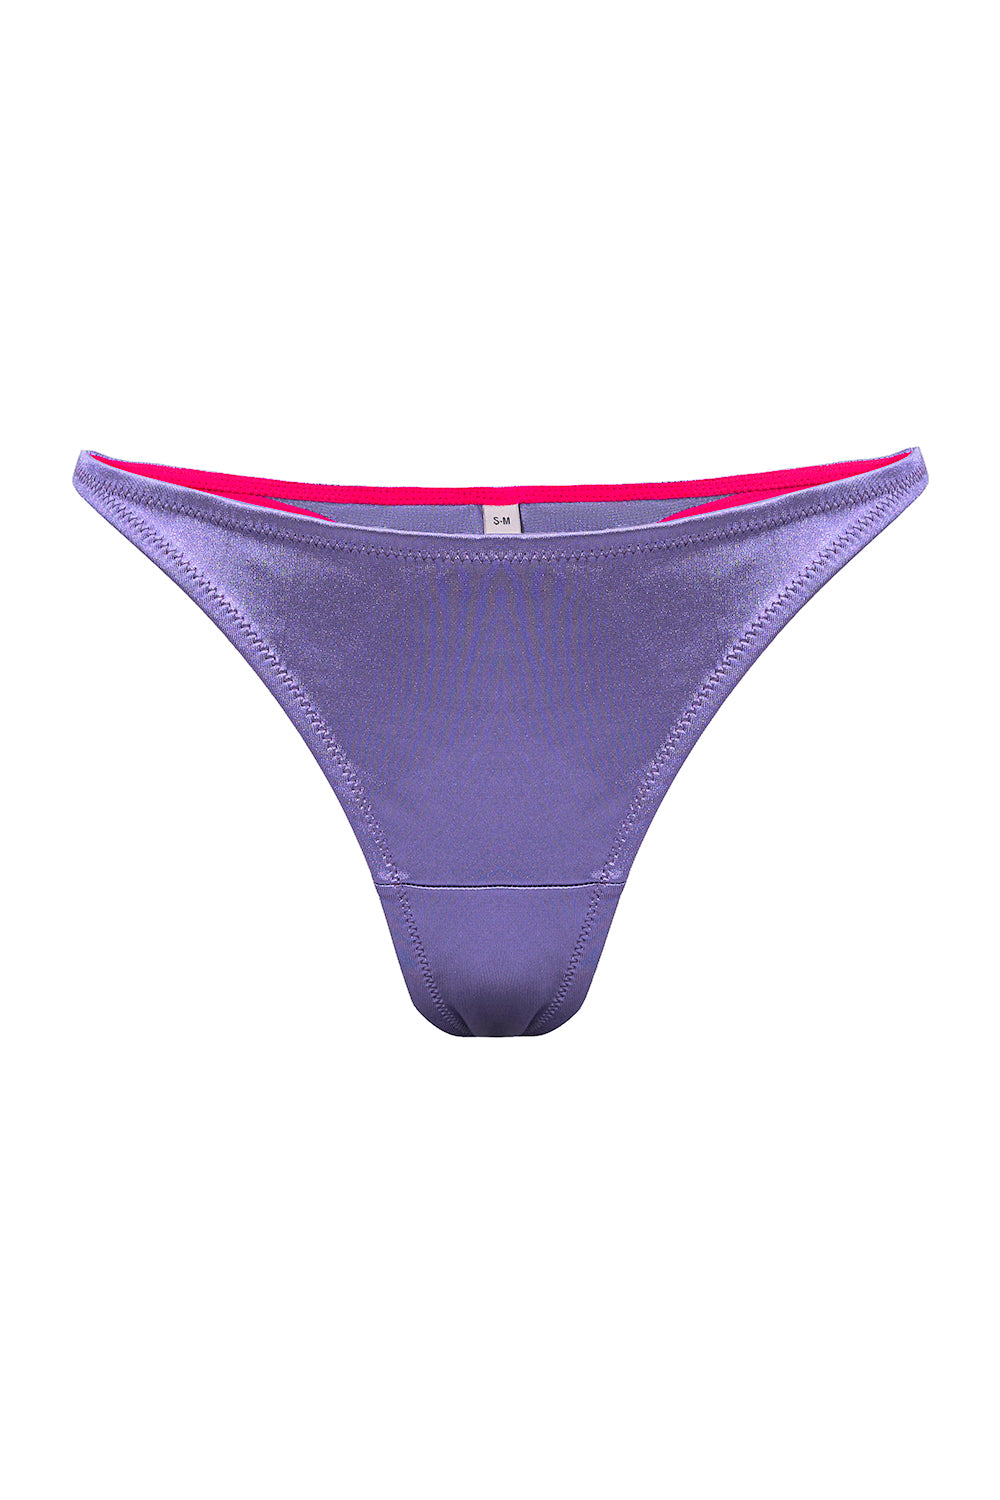 Lupina purple thongs